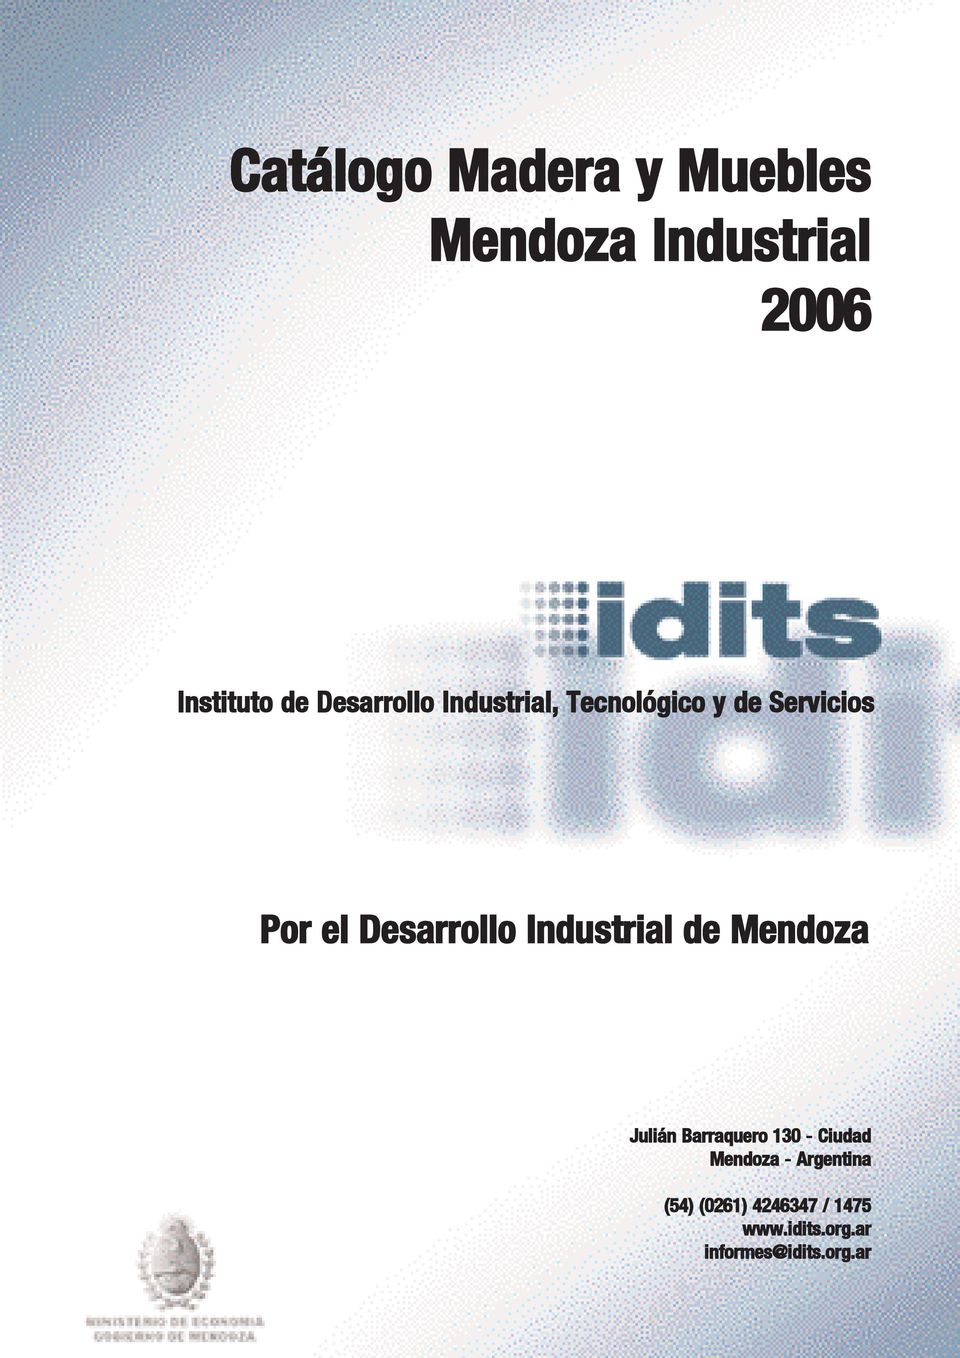 Catálogo y Muebles Mendoza Industrial PDF Free Download